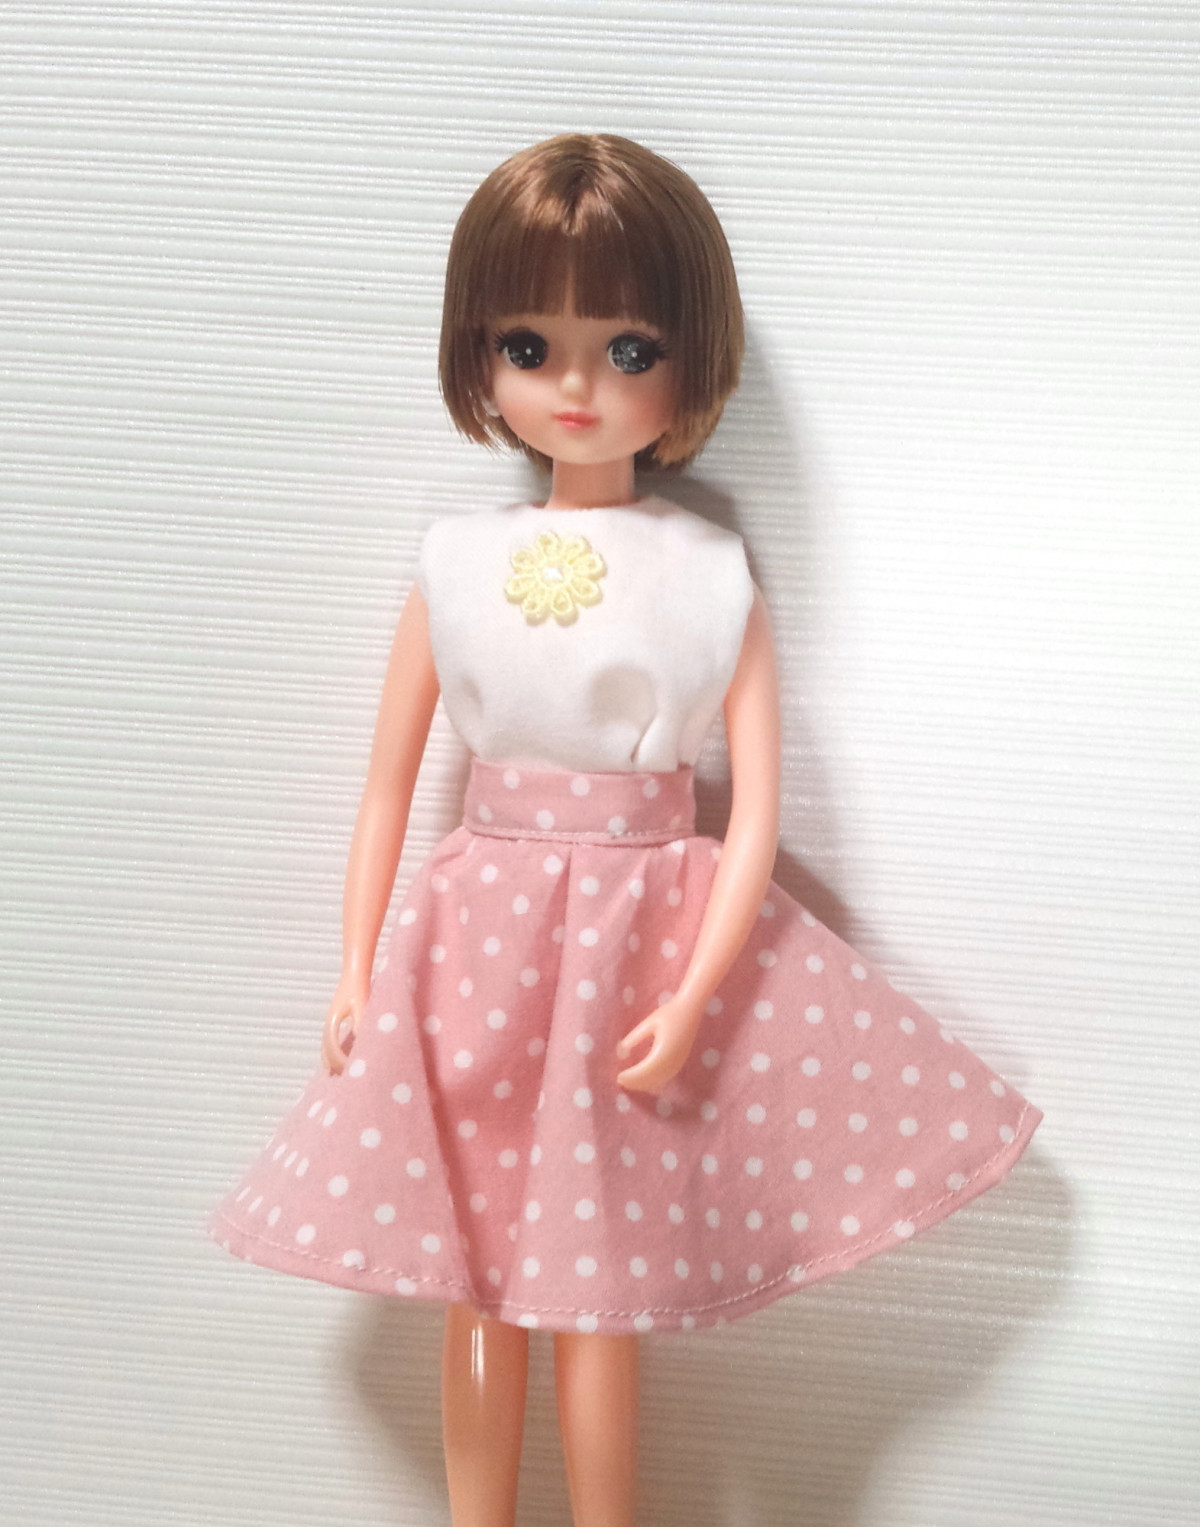 リカちゃん人形のサーキュラースカートの作り方 Weboo ウィーブー 暮らしをつくる